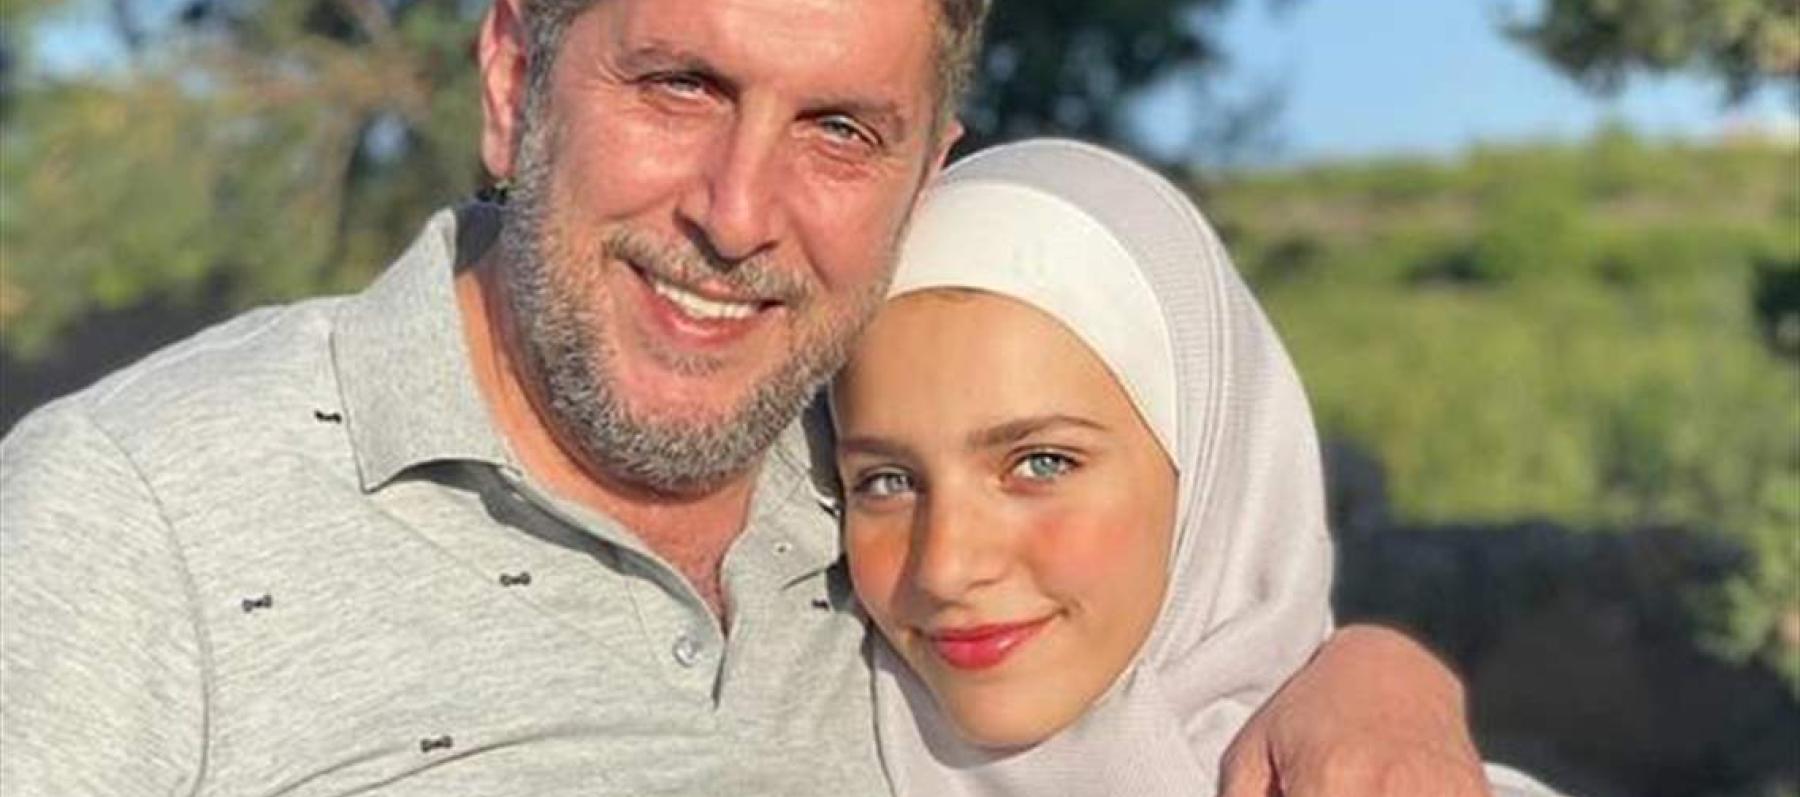 ماسة محمد قنوع مع والدها الراحل - صورة من السوشيال ميديا